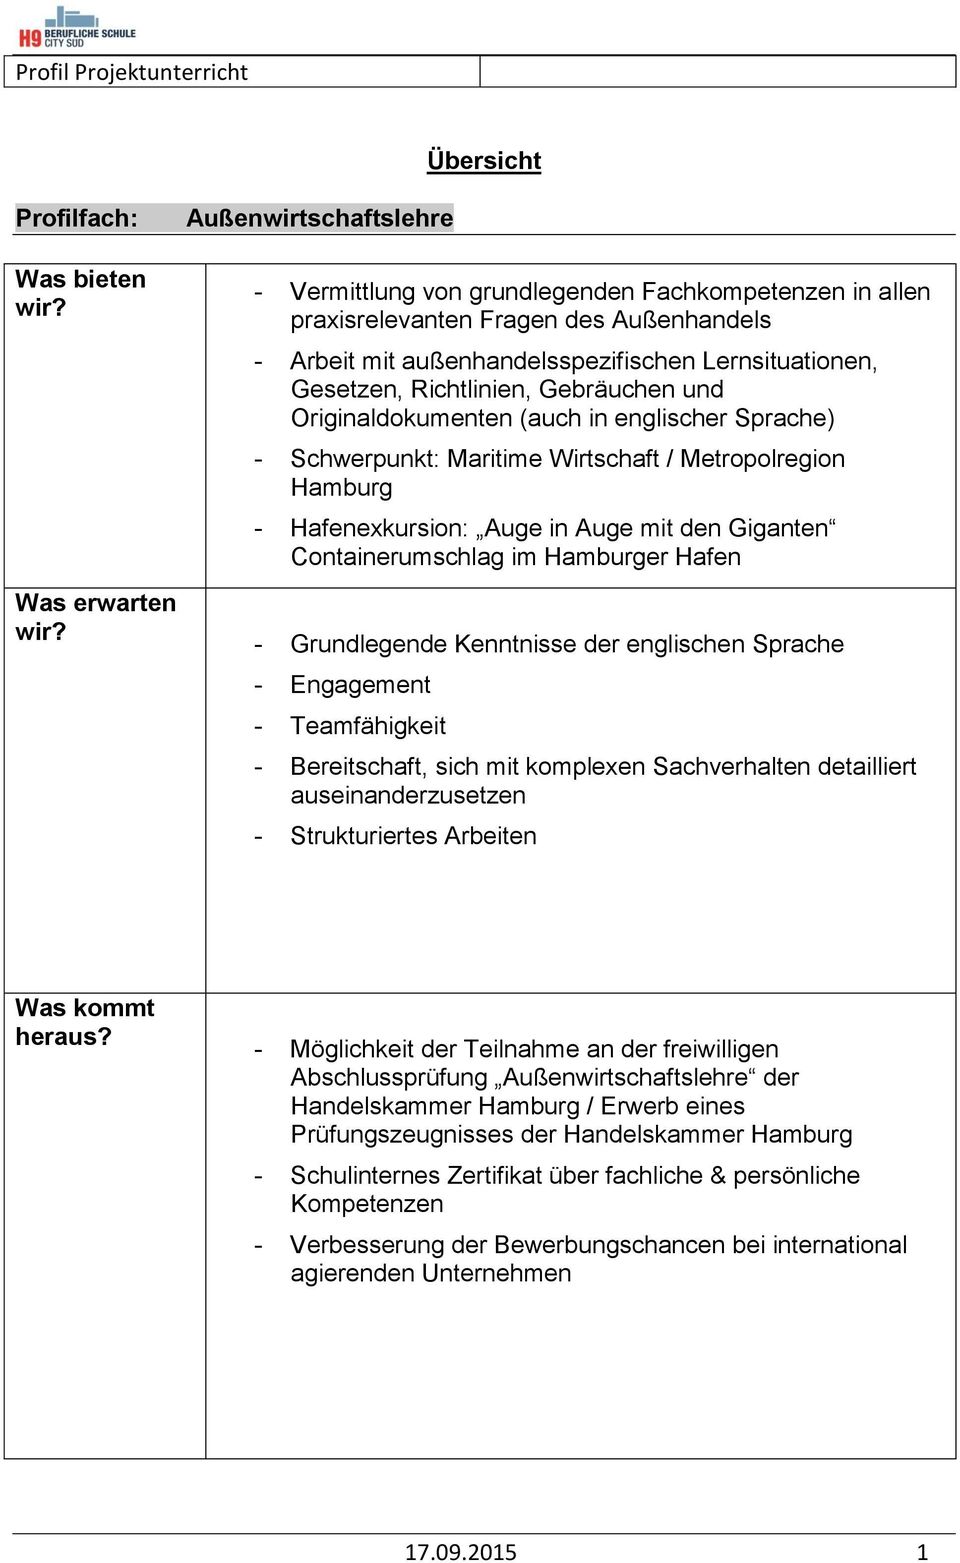 Hamburger Hafen - Grundlegende Kenntnisse der englischen Sprache - Engagement - Teamfähigkeit - Bereitschaft, sich mit komplexen Sachverhalten detailliert auseinanderzusetzen - Strukturiertes